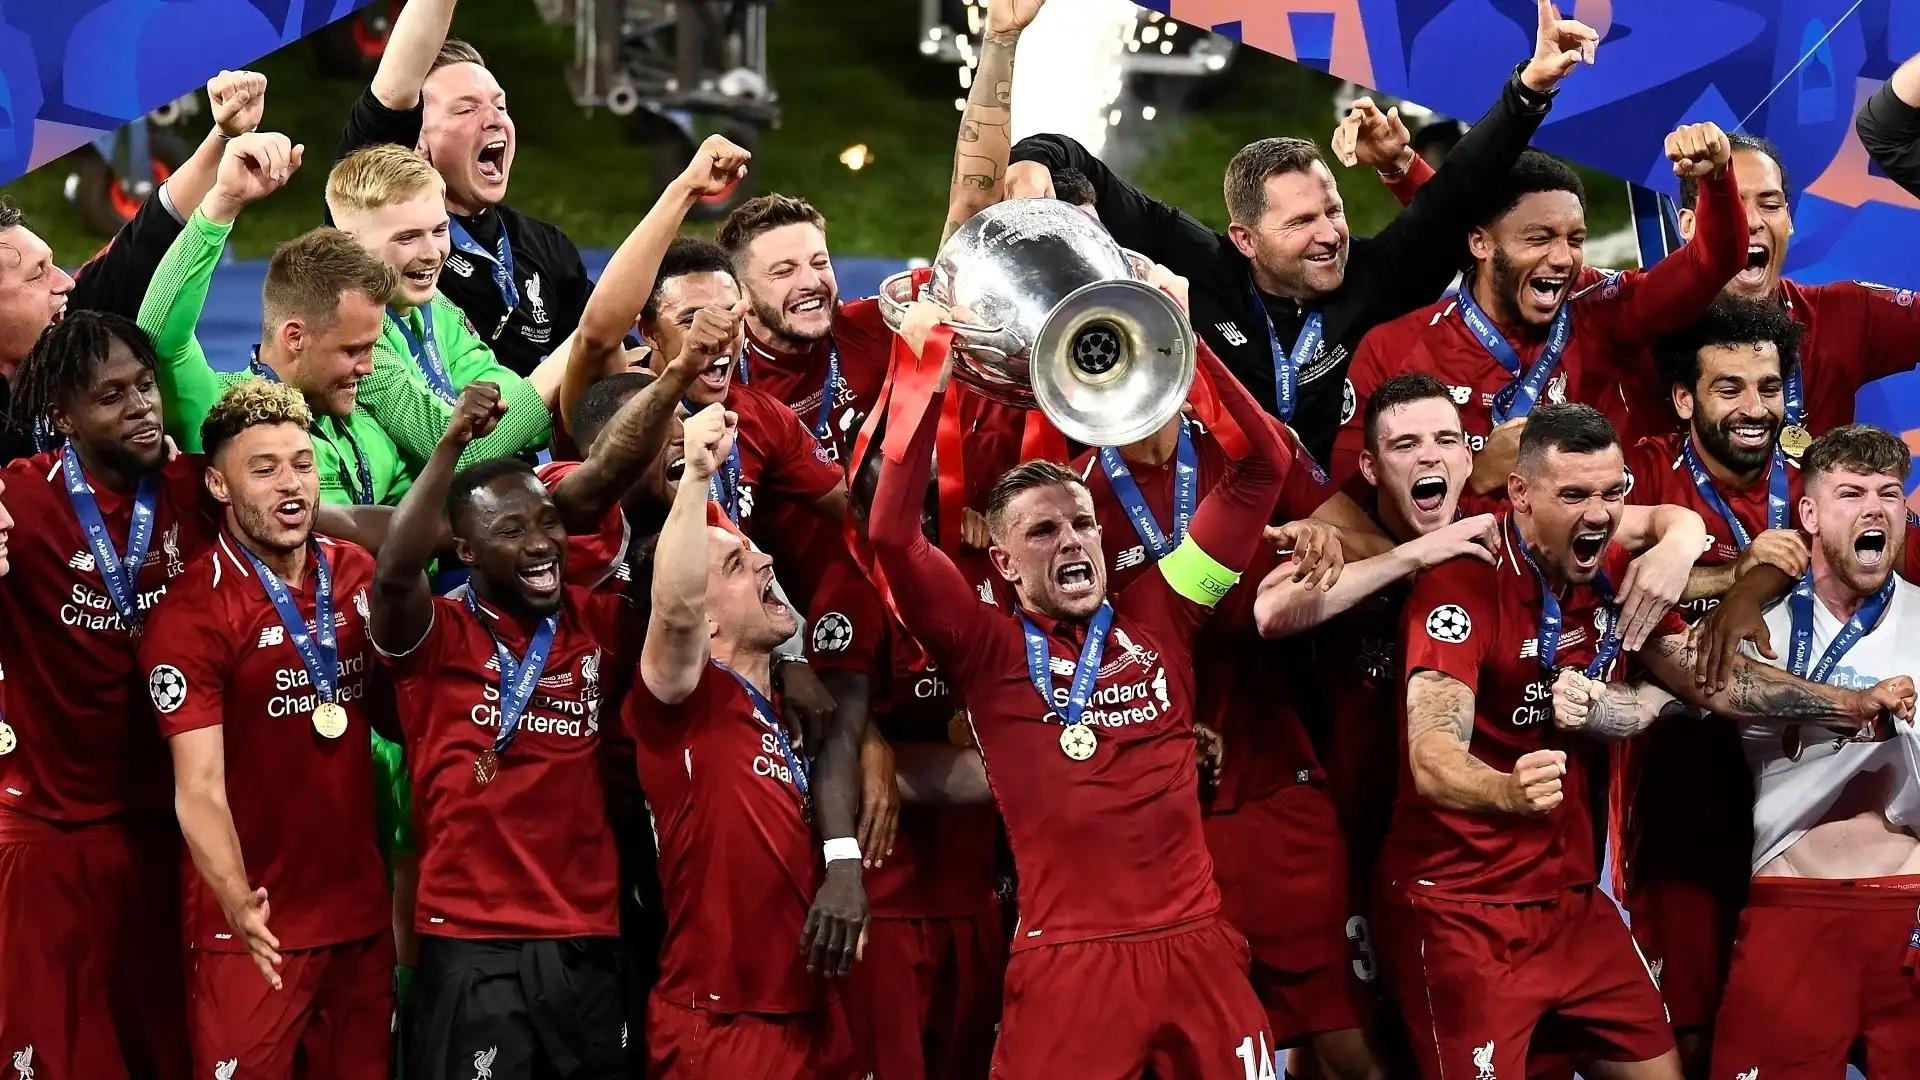 7) Liverpool (Inghilterra): 14 trofei (6 Champions League, 3 Coppe Uefa, 4 Supercoppe europee, 1 Coppa del mondo per club)